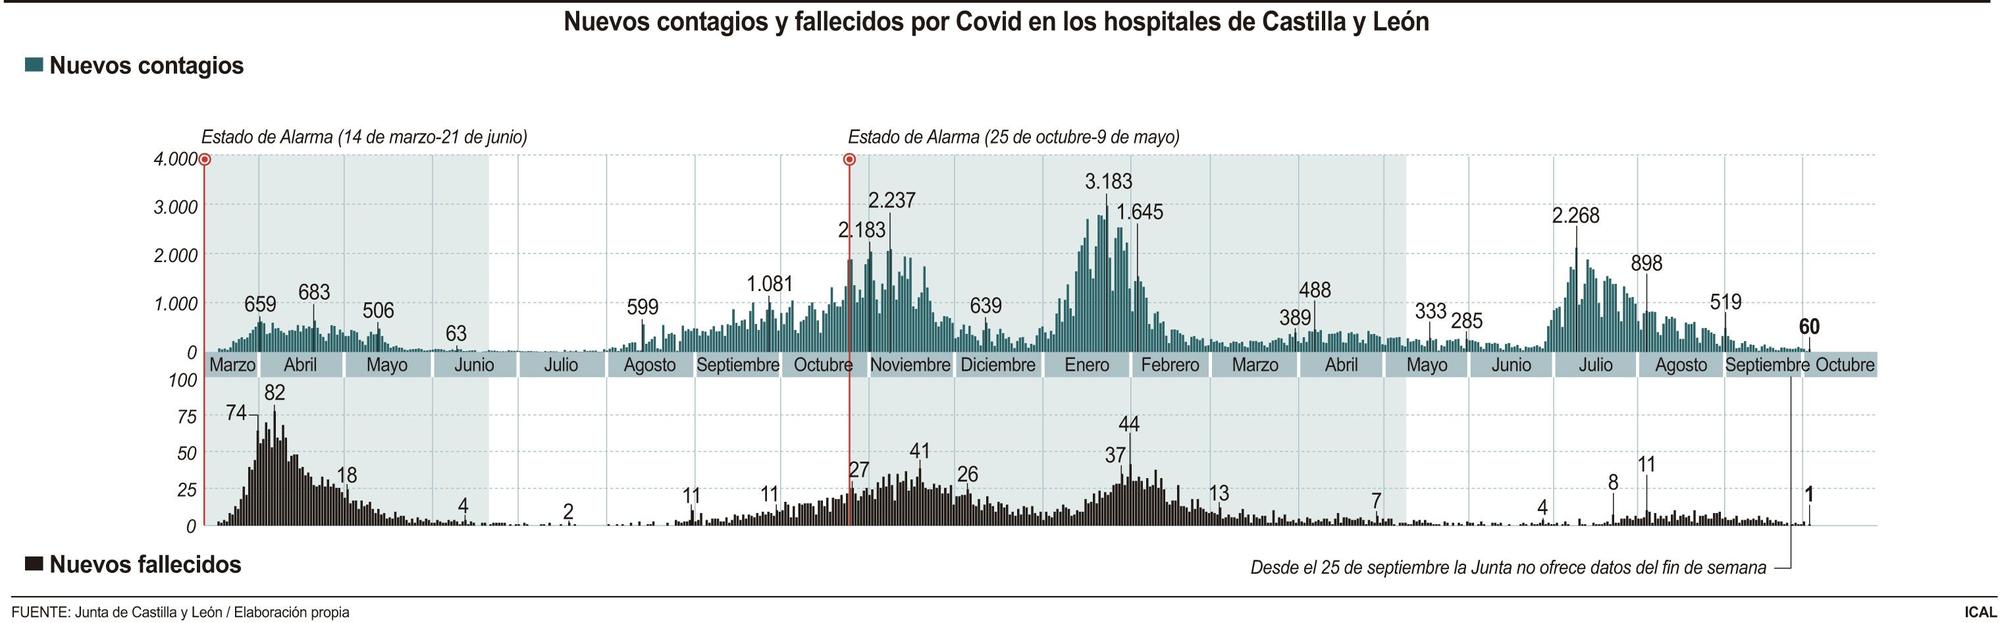 Nuevos contagios y fallecidos por coronavirus en hospitales de Castilla y León.